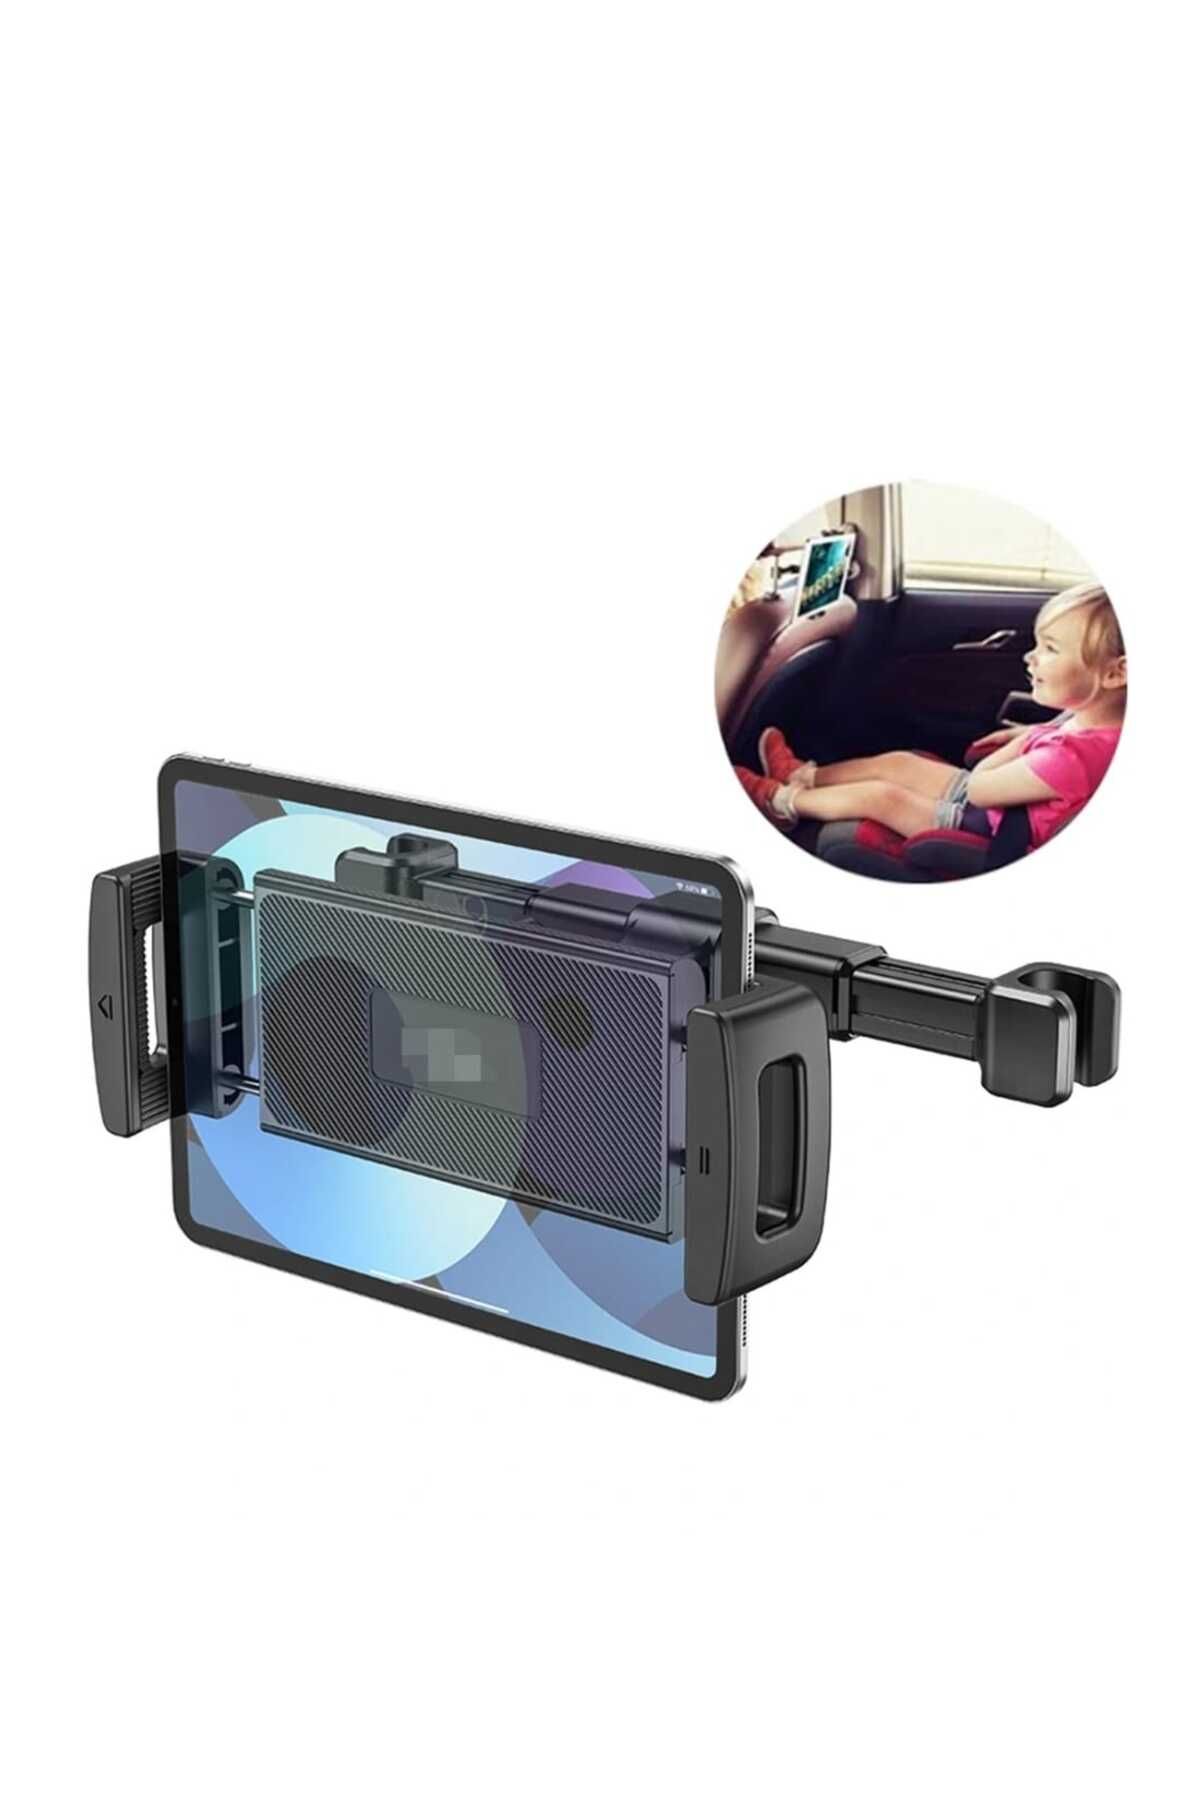 Asfal Araç içi Koltuk Arkası Telefon ve Tablet Tutucu 360° Dönebilir Yatay ve Dikey Kullanılır